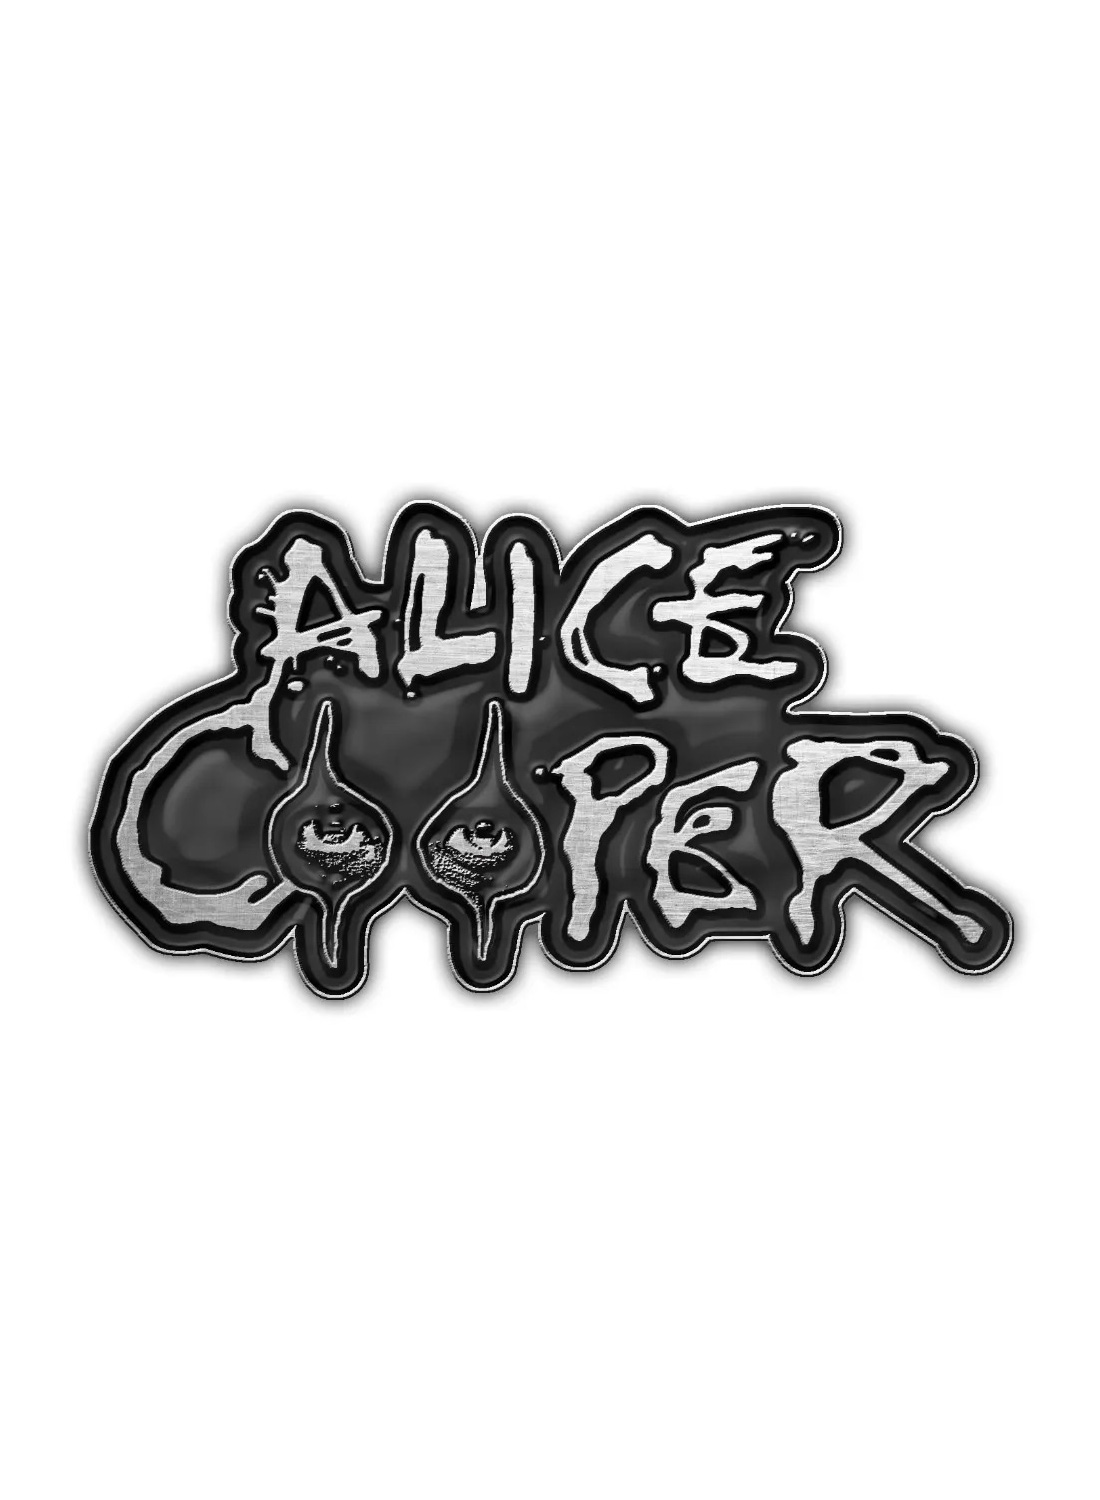 Alice Cooper Metal Pin Badge